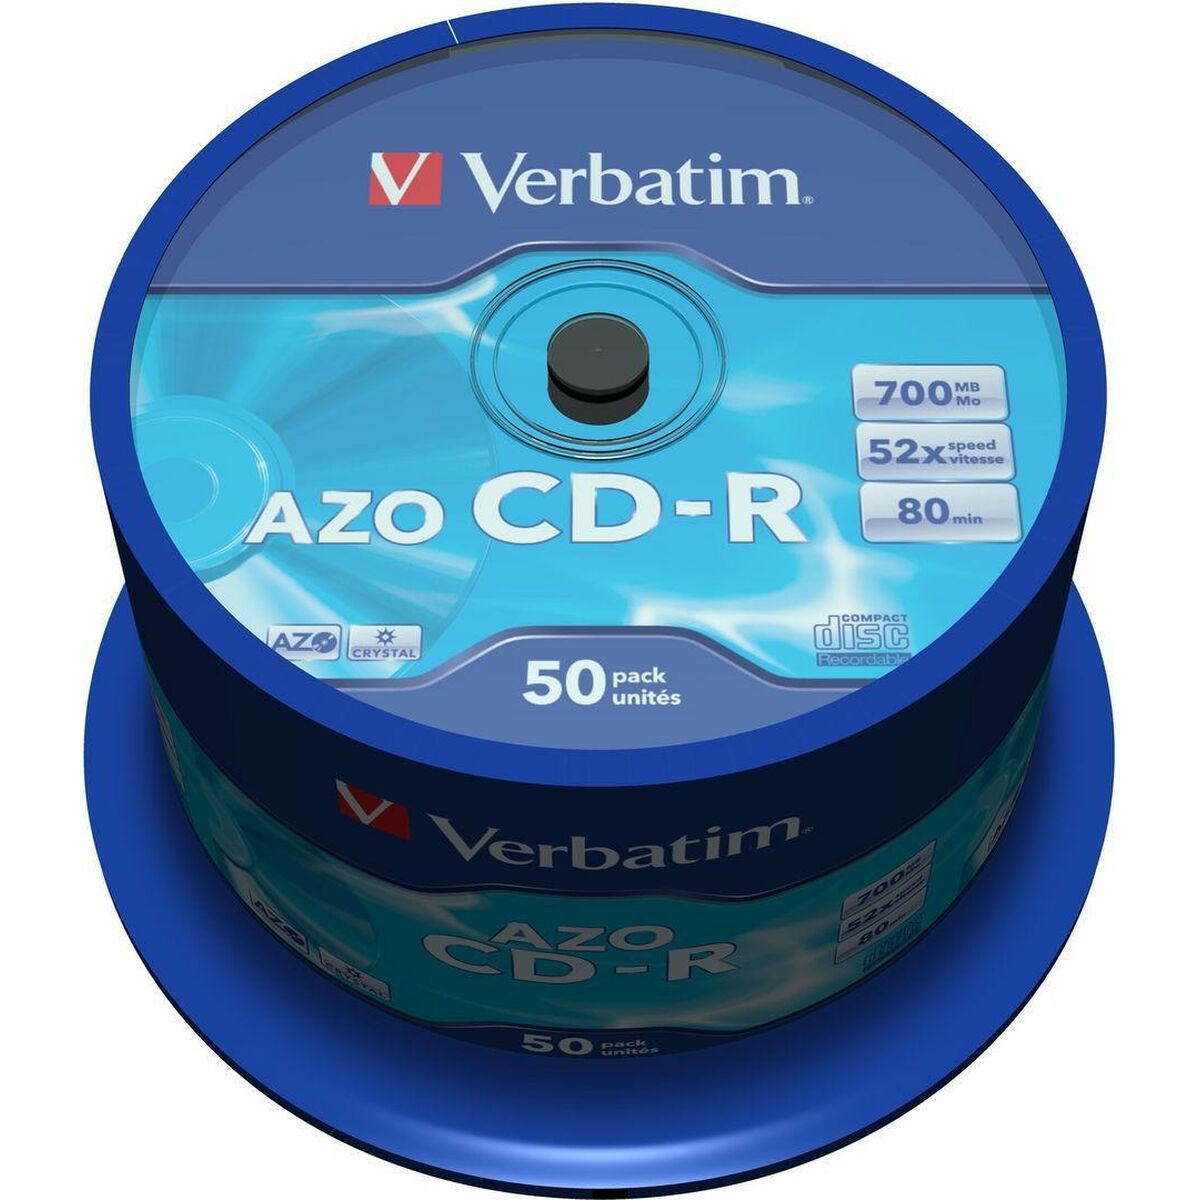 CD-R Verbatim AZO Crystal 50 Unități 700 MB 52x